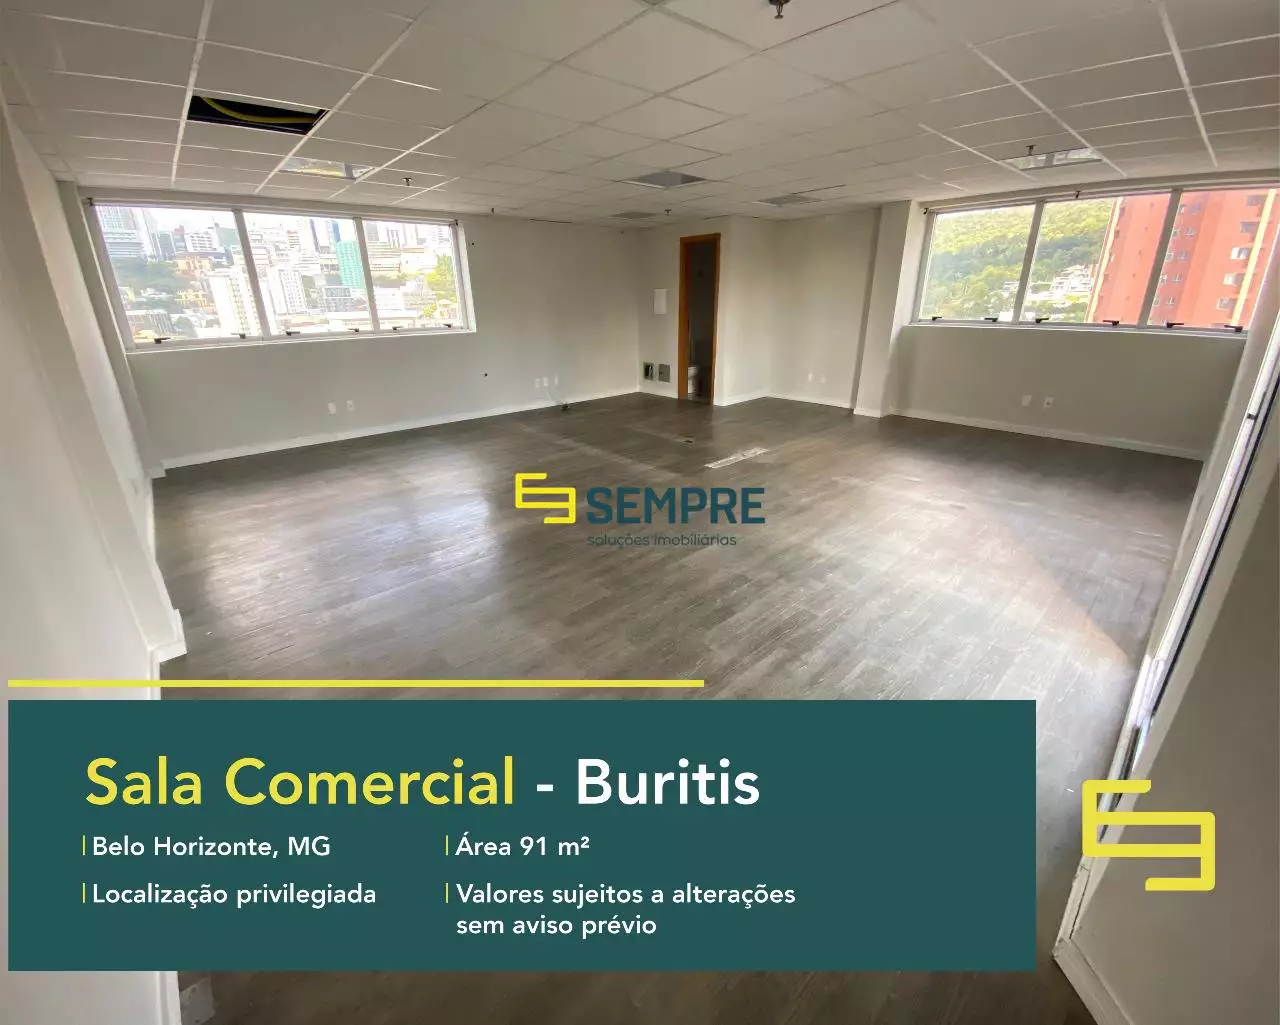 Sala comercial para alugar no Buritis em BH, em excelente localização. O estabelecimento comercial conta com área de 91,09 m².